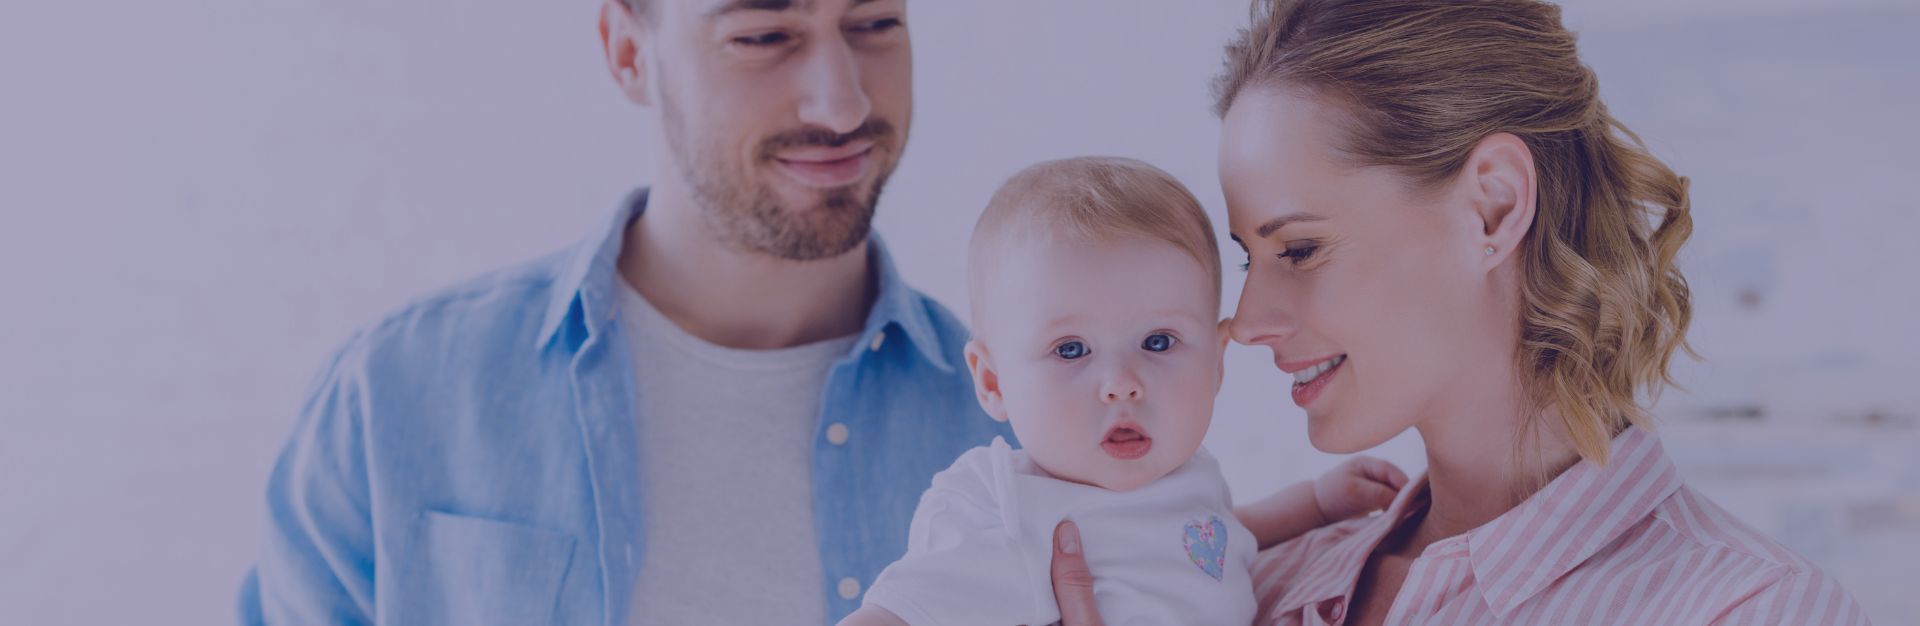 Szczęśliwi rodzice z niemowlęciem poczętym metodą in vitro Kraków